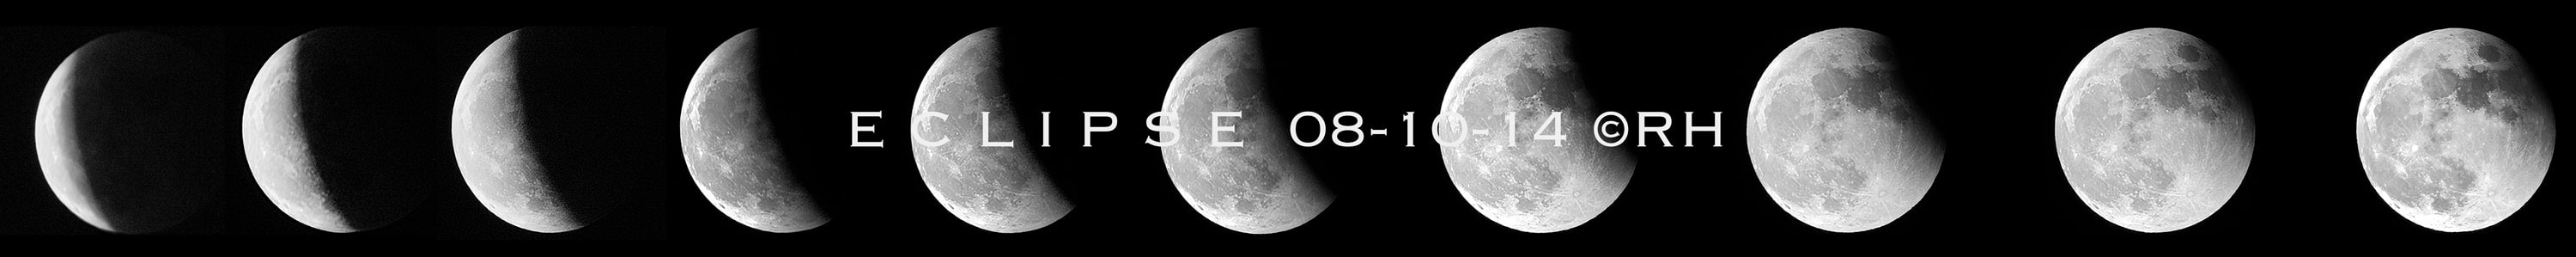 lunar eclipse 08-10-14 images by Rick Hemi